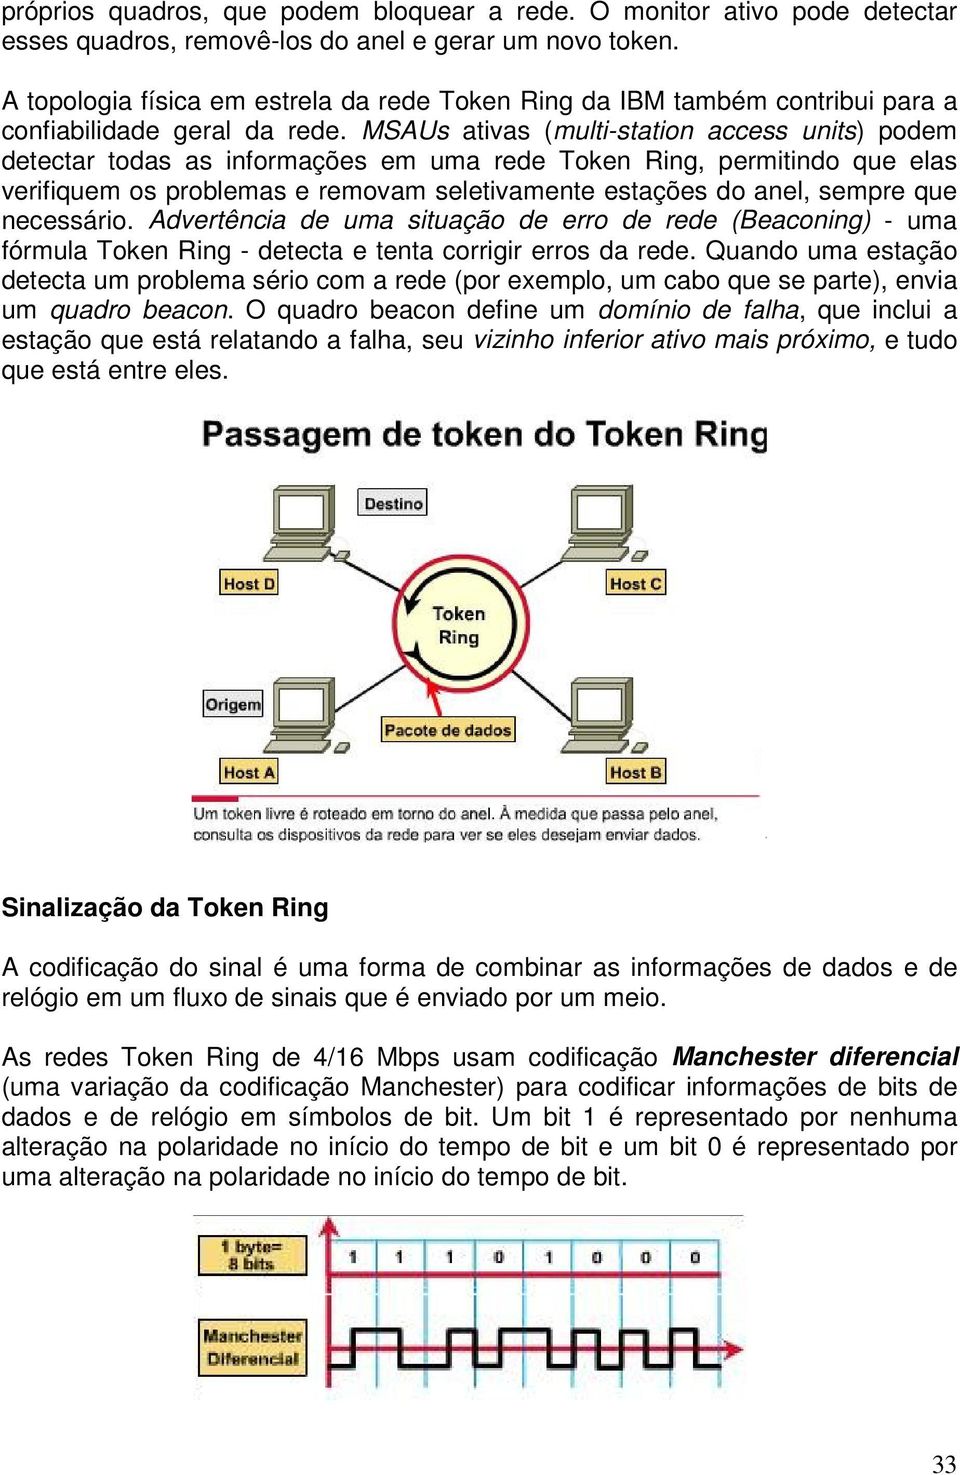 MSAUs ativas (multi-station access units) podem detectar todas as informações em uma rede Token Ring, permitindo que elas verifiquem os problemas e removam seletivamente estações do anel, sempre que